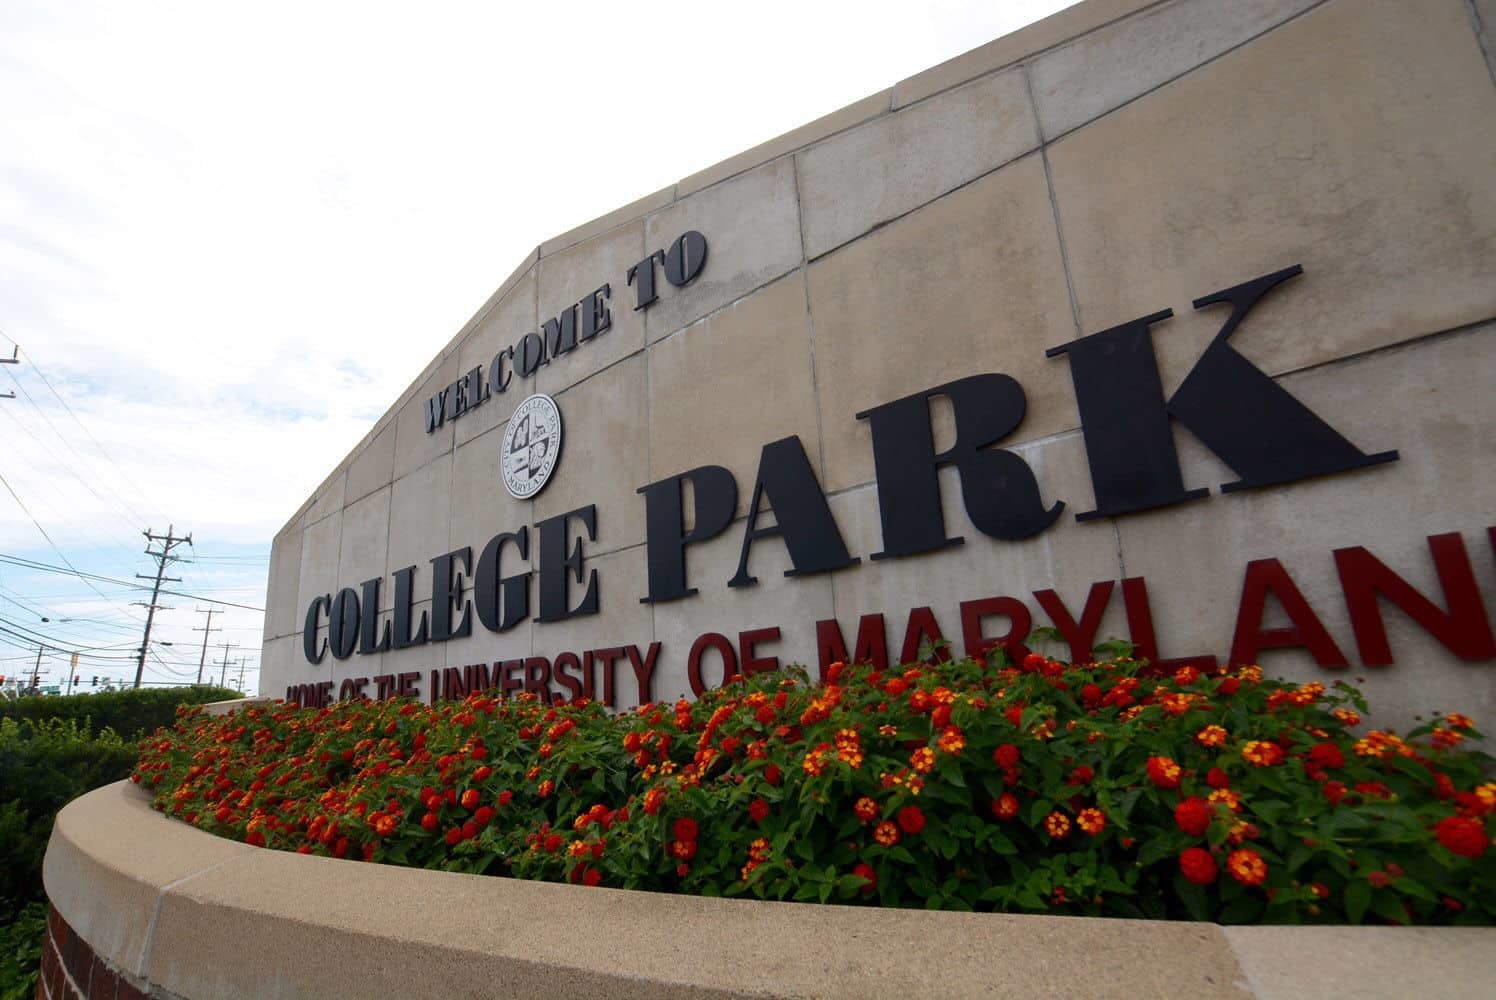 UMD馬里蘭大學 - 位於華盛頓都會區的優質公立大學